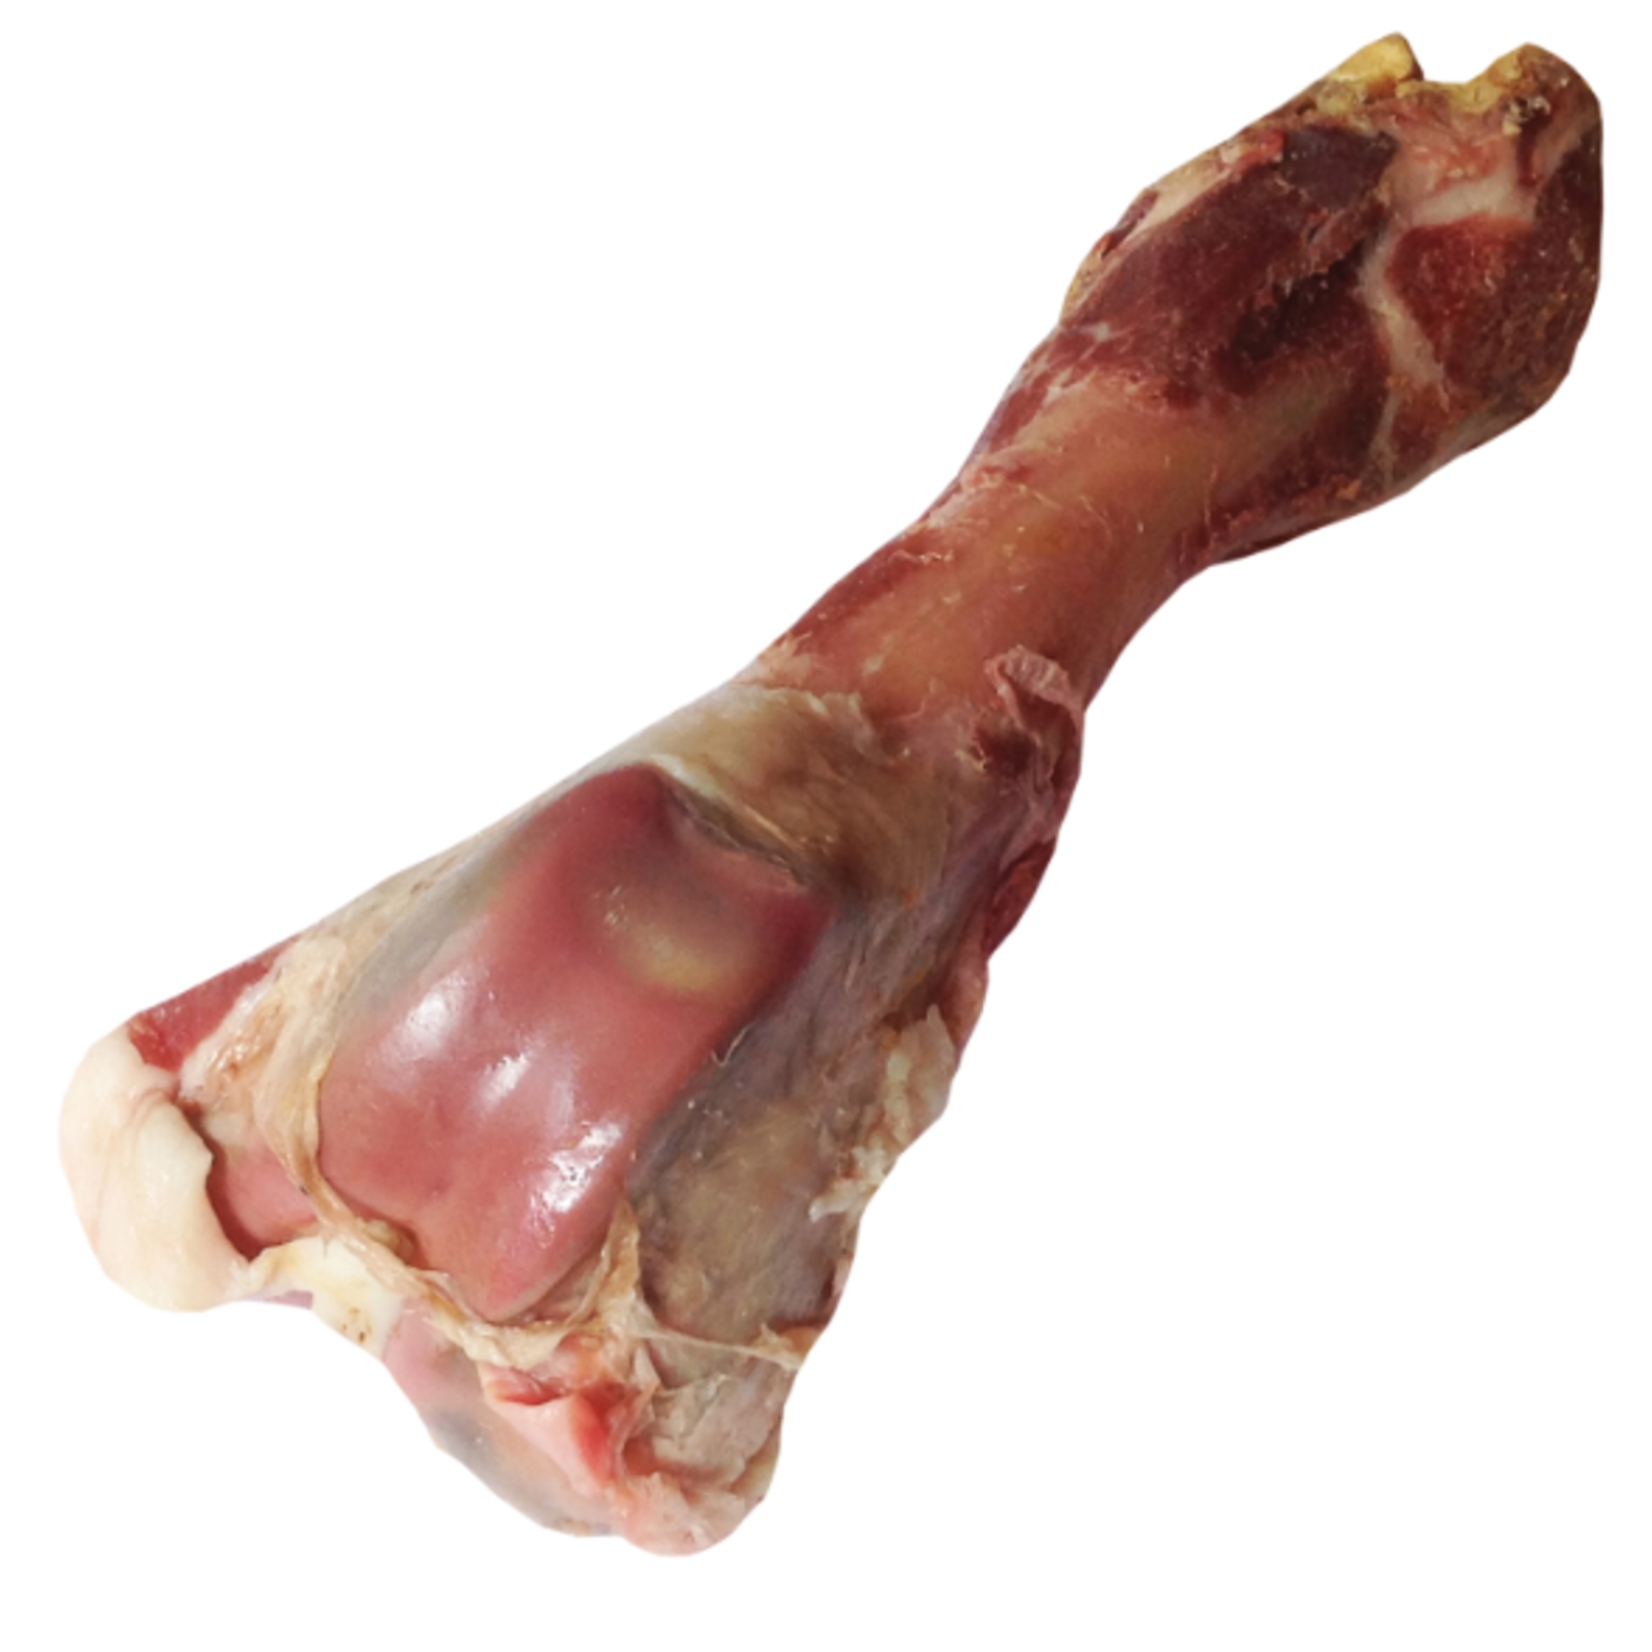 Dogit Charcuterie - Prosciutto Bone - Large Femur